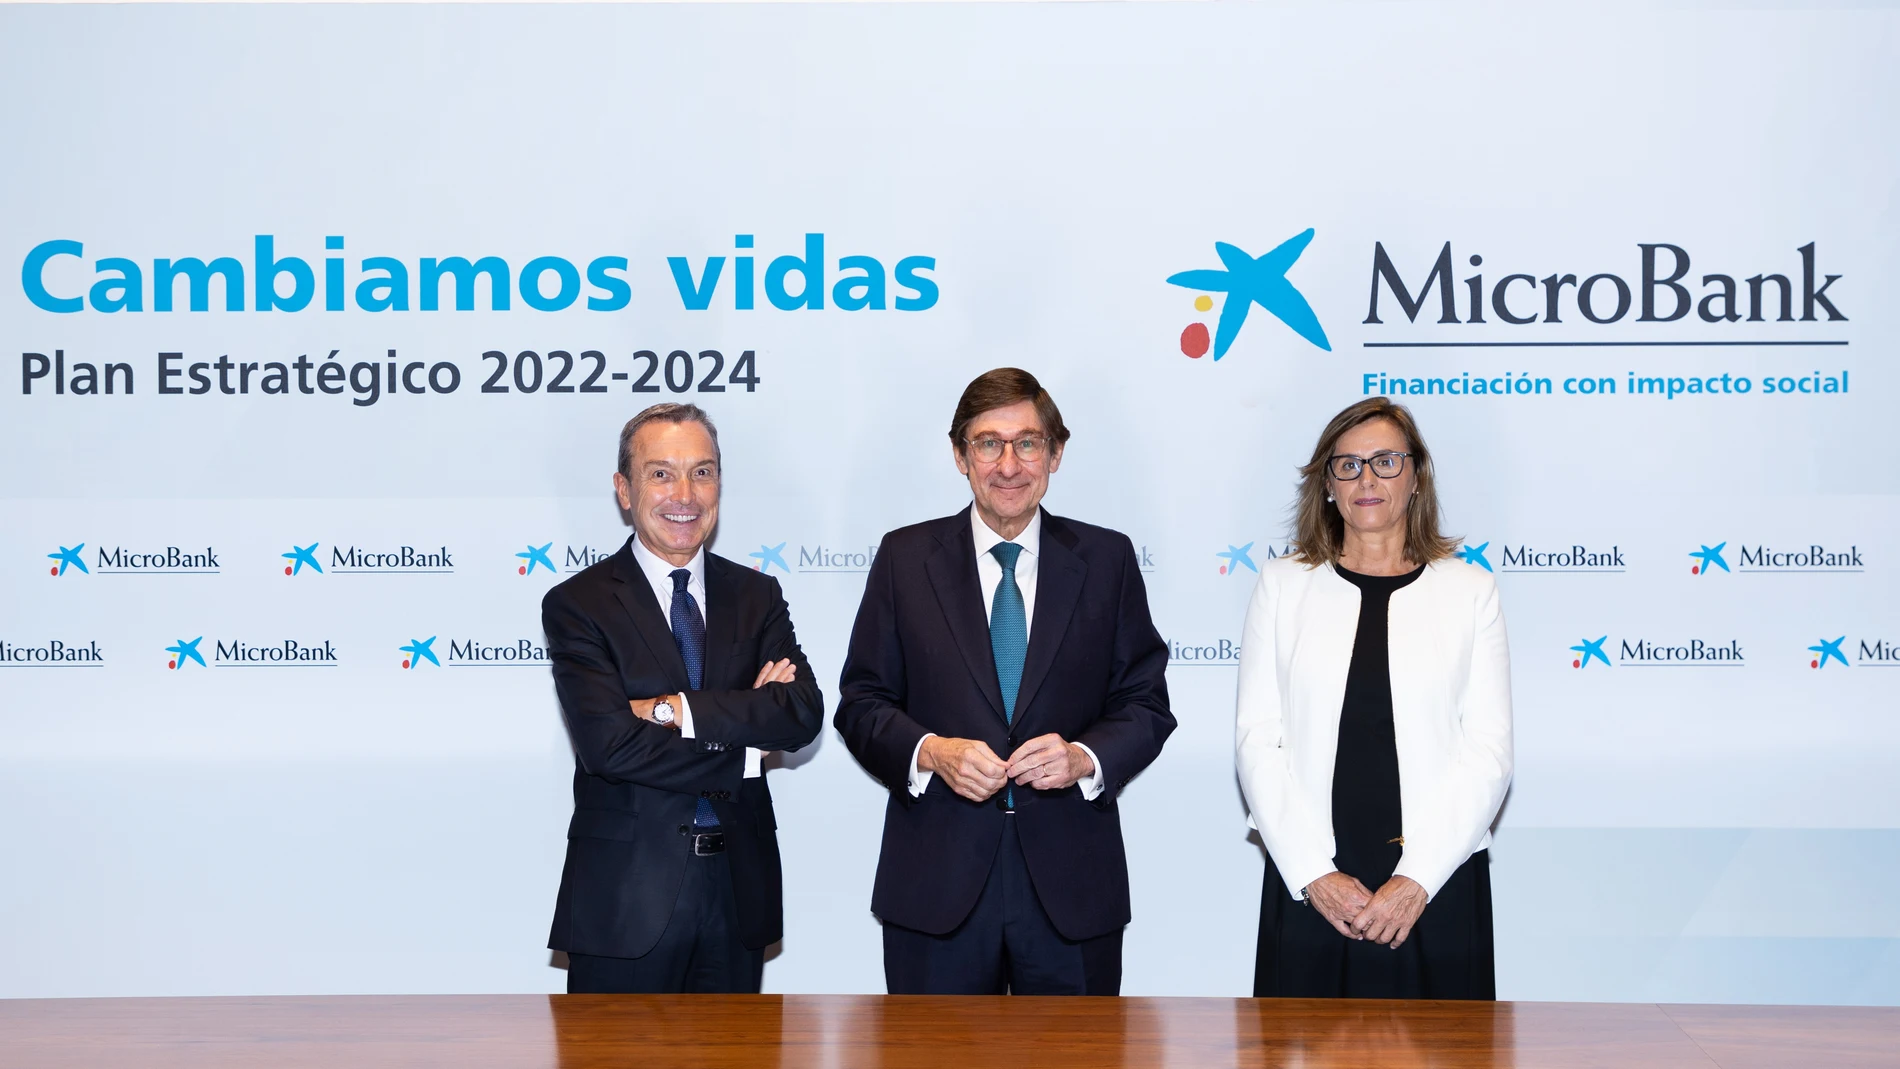 El presidente de MicroBank, Juan Carlos Gallego (i); el presidente de CaixaBank, José Ignacio Goirigolzarri (c), y la directora general de MicroBank, Cristina González Viu (d), en la presentación del plan estratégico de MicroBank 2022-2024